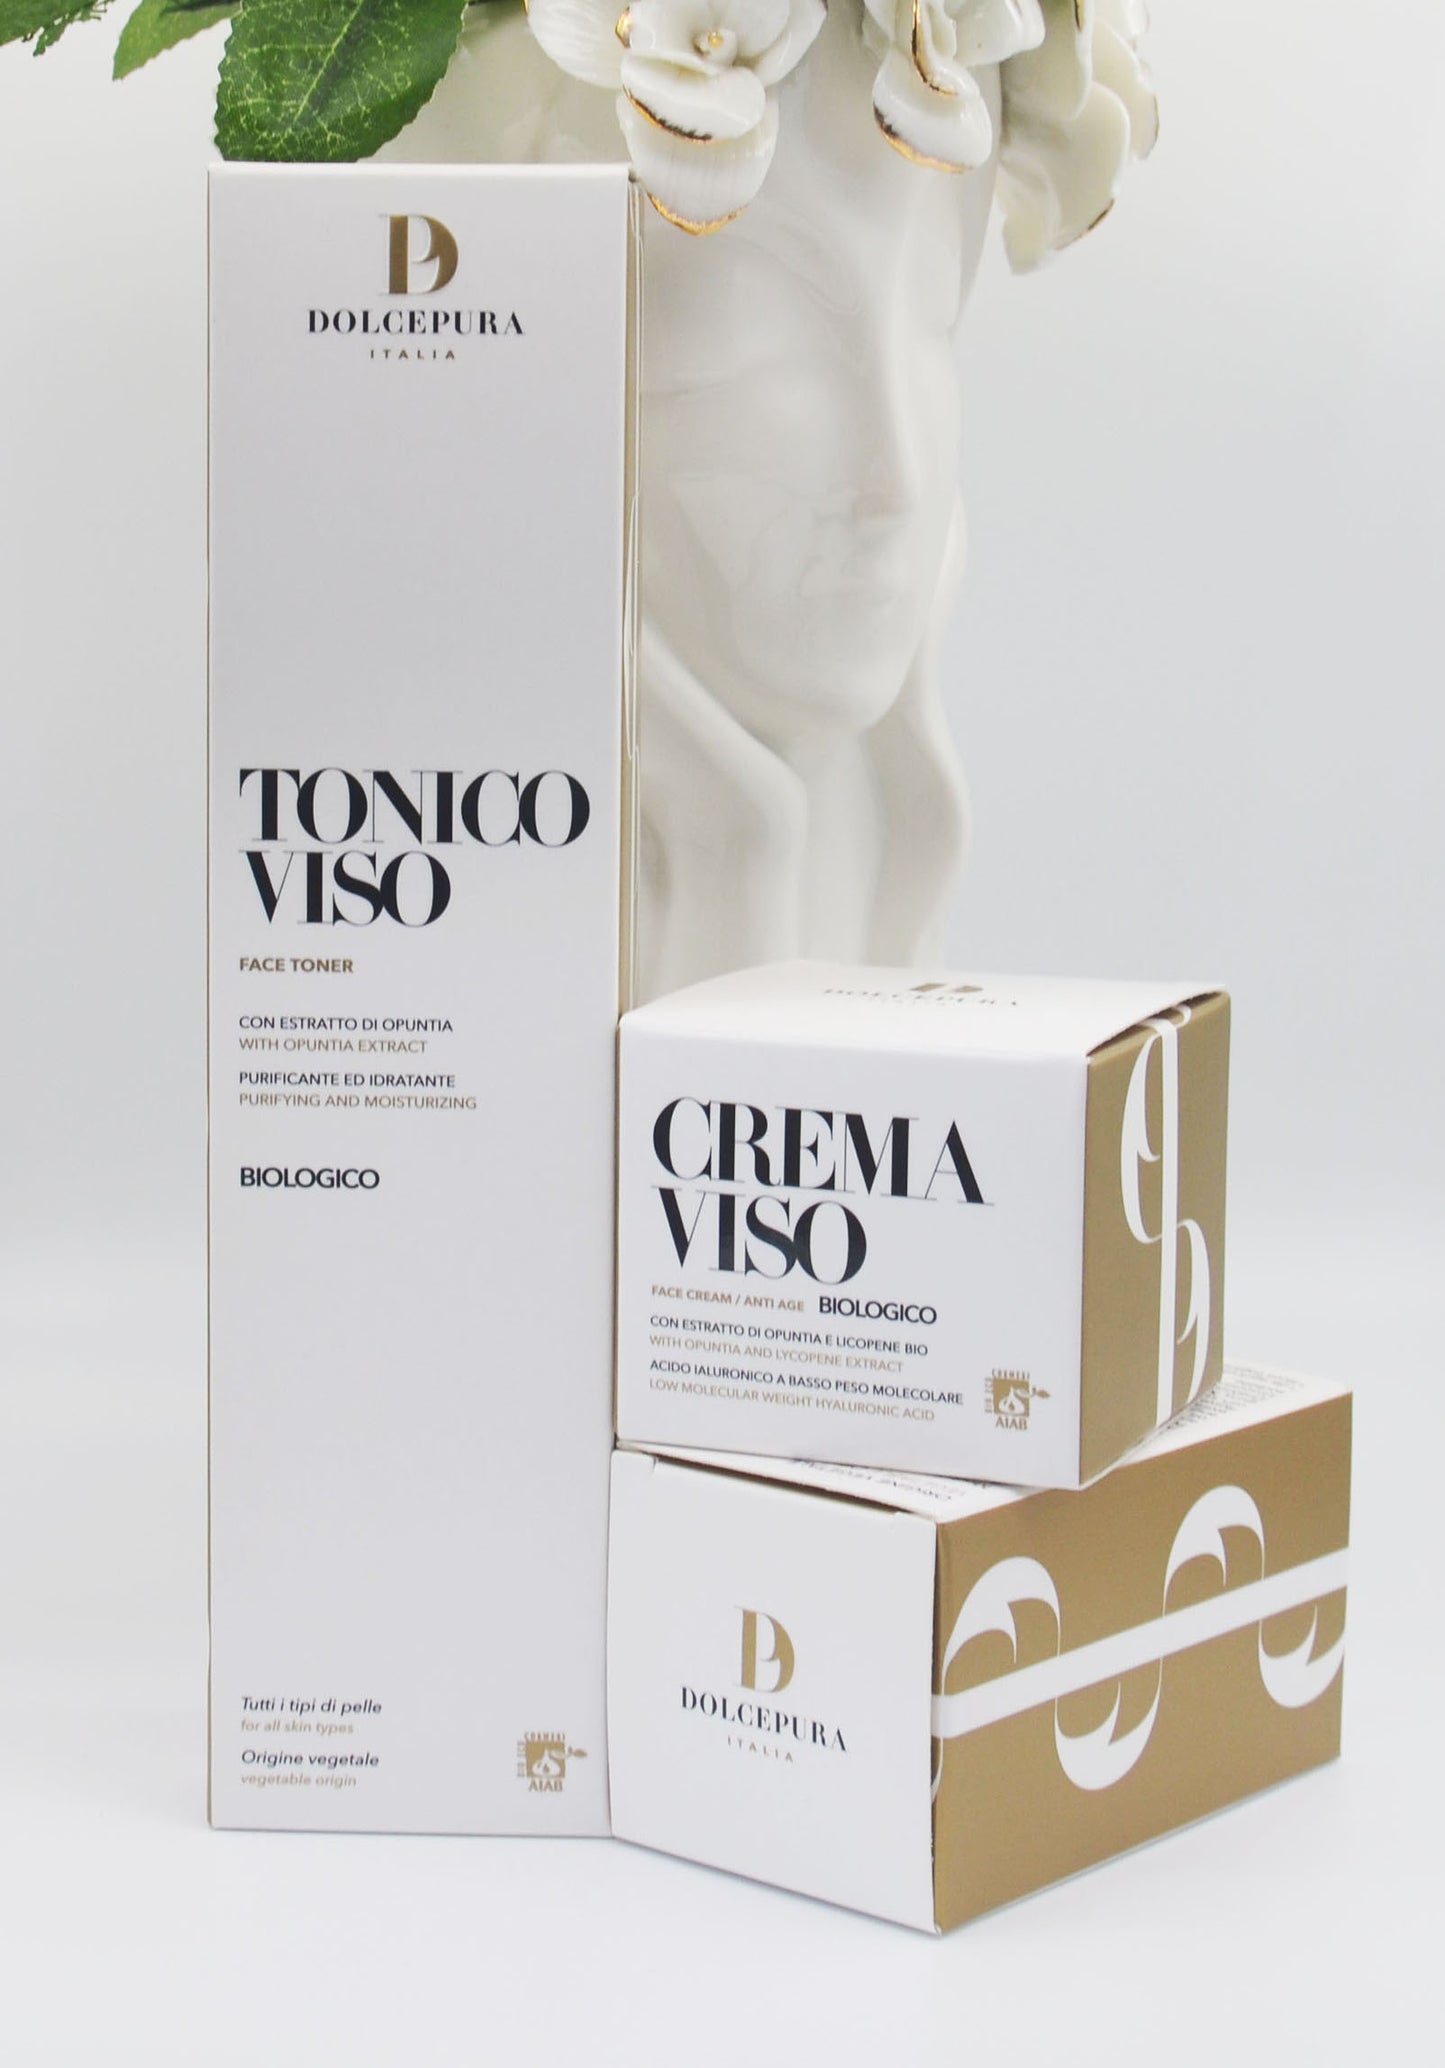 Tónico facial y conjunto de crema "GENTIL" (a partir de ingredientes orgánicos italianos) producción artesanal.  Certificado AIAB ecobium